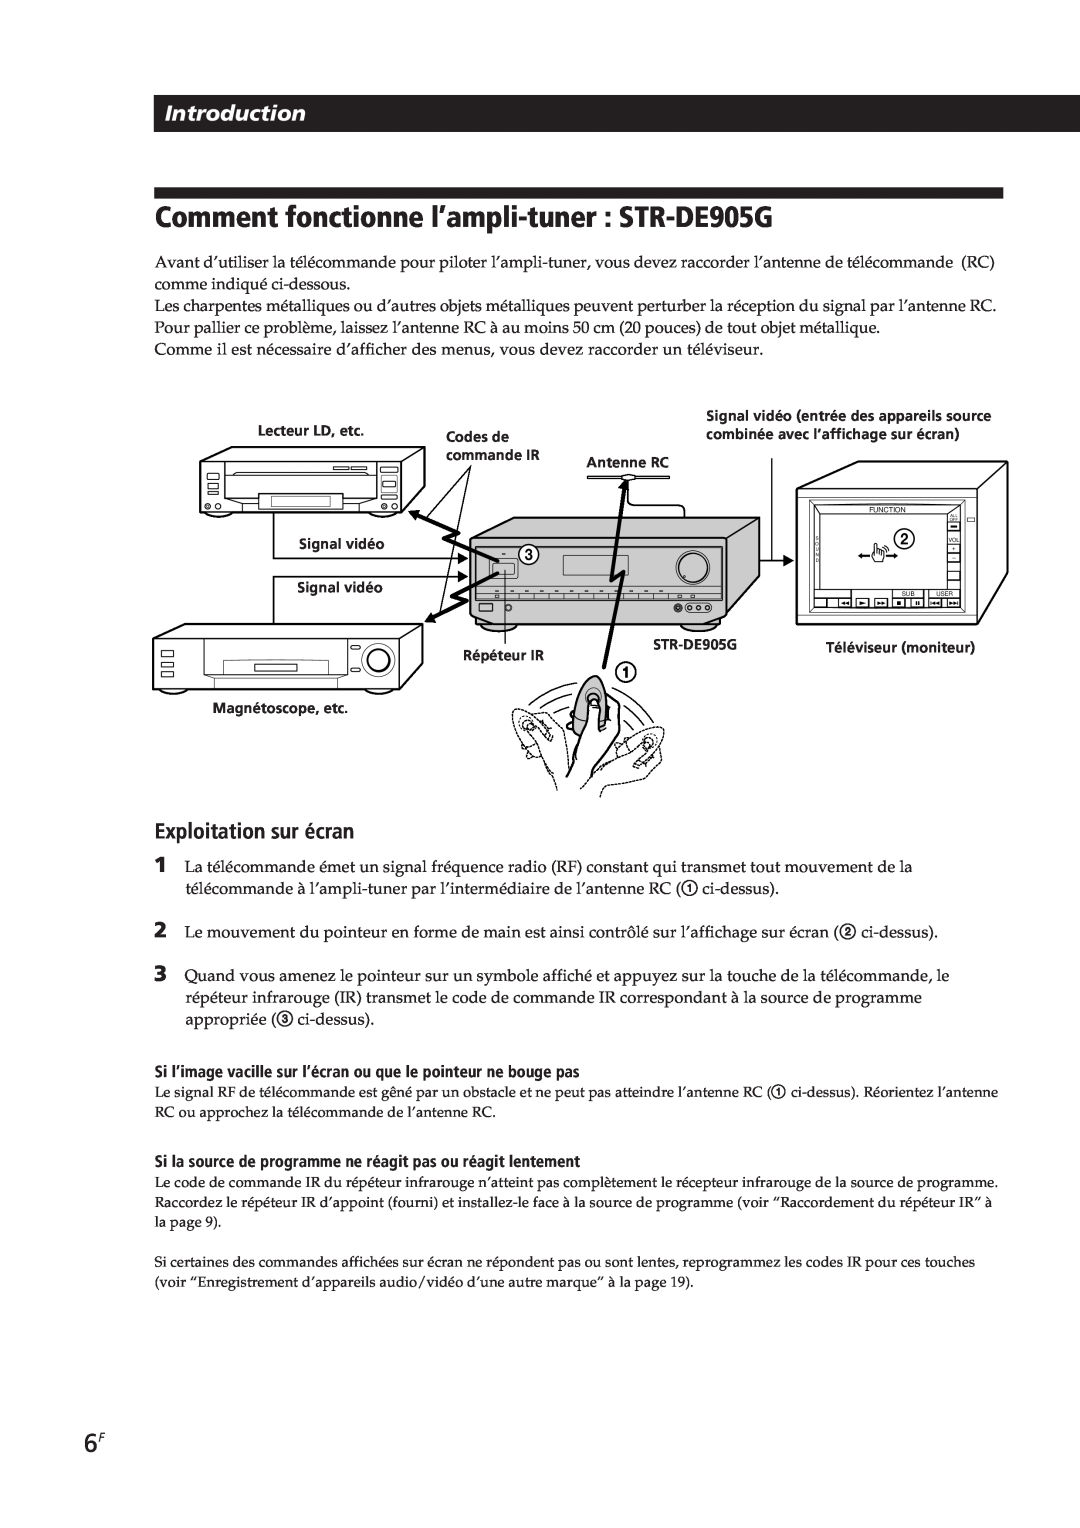 Sony STR-DE905G, STR-DE805G manual Comment fonctionne l’ampli-tuner : STR-DE905G, Introduction, Exploitation sur écran 